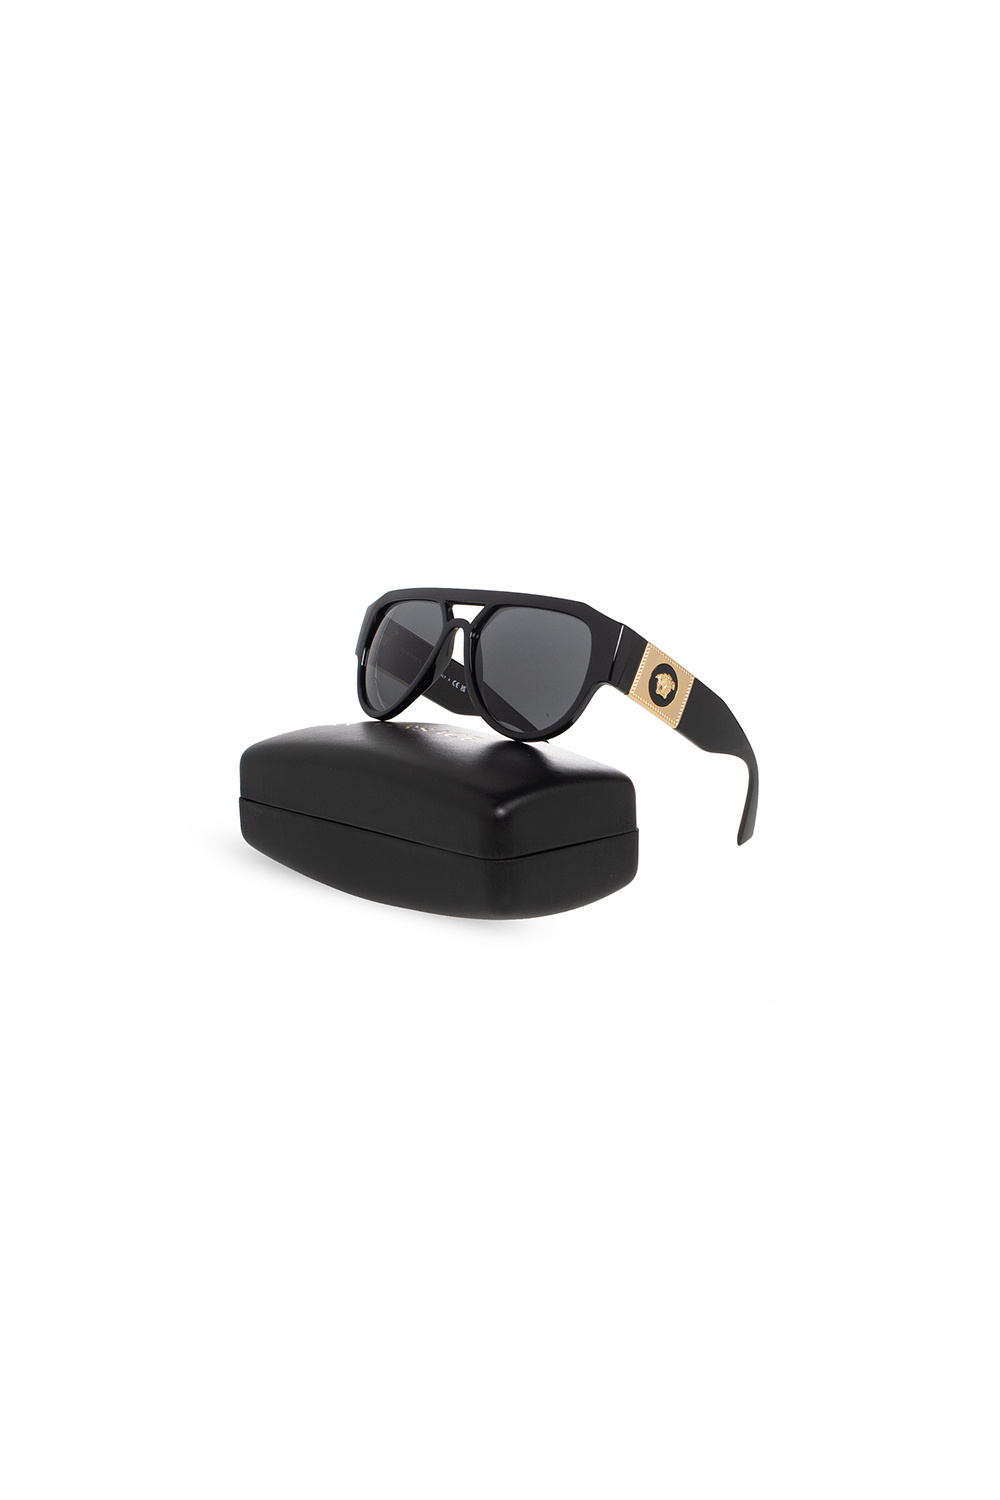 Versace CORSO COMO Sunglasses